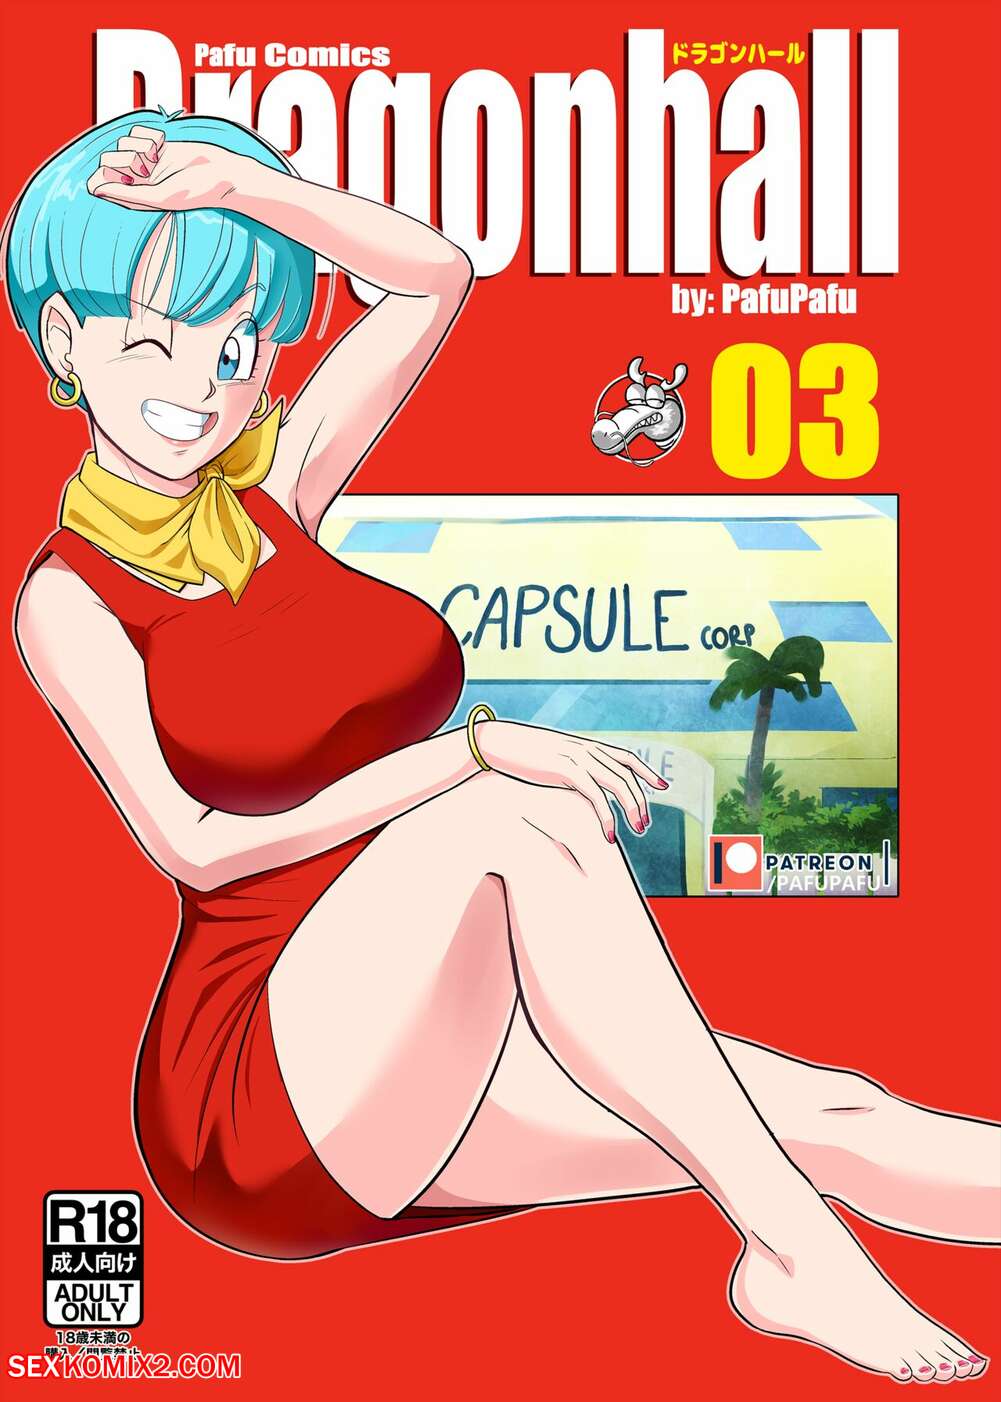 âœ…ï¸ Porn comic Gohan vs Bulma. Dragon Ball Z. PafuPafu Sex comic beauty MILF  was | Porn comics in English for adults only | sexkomix2.com